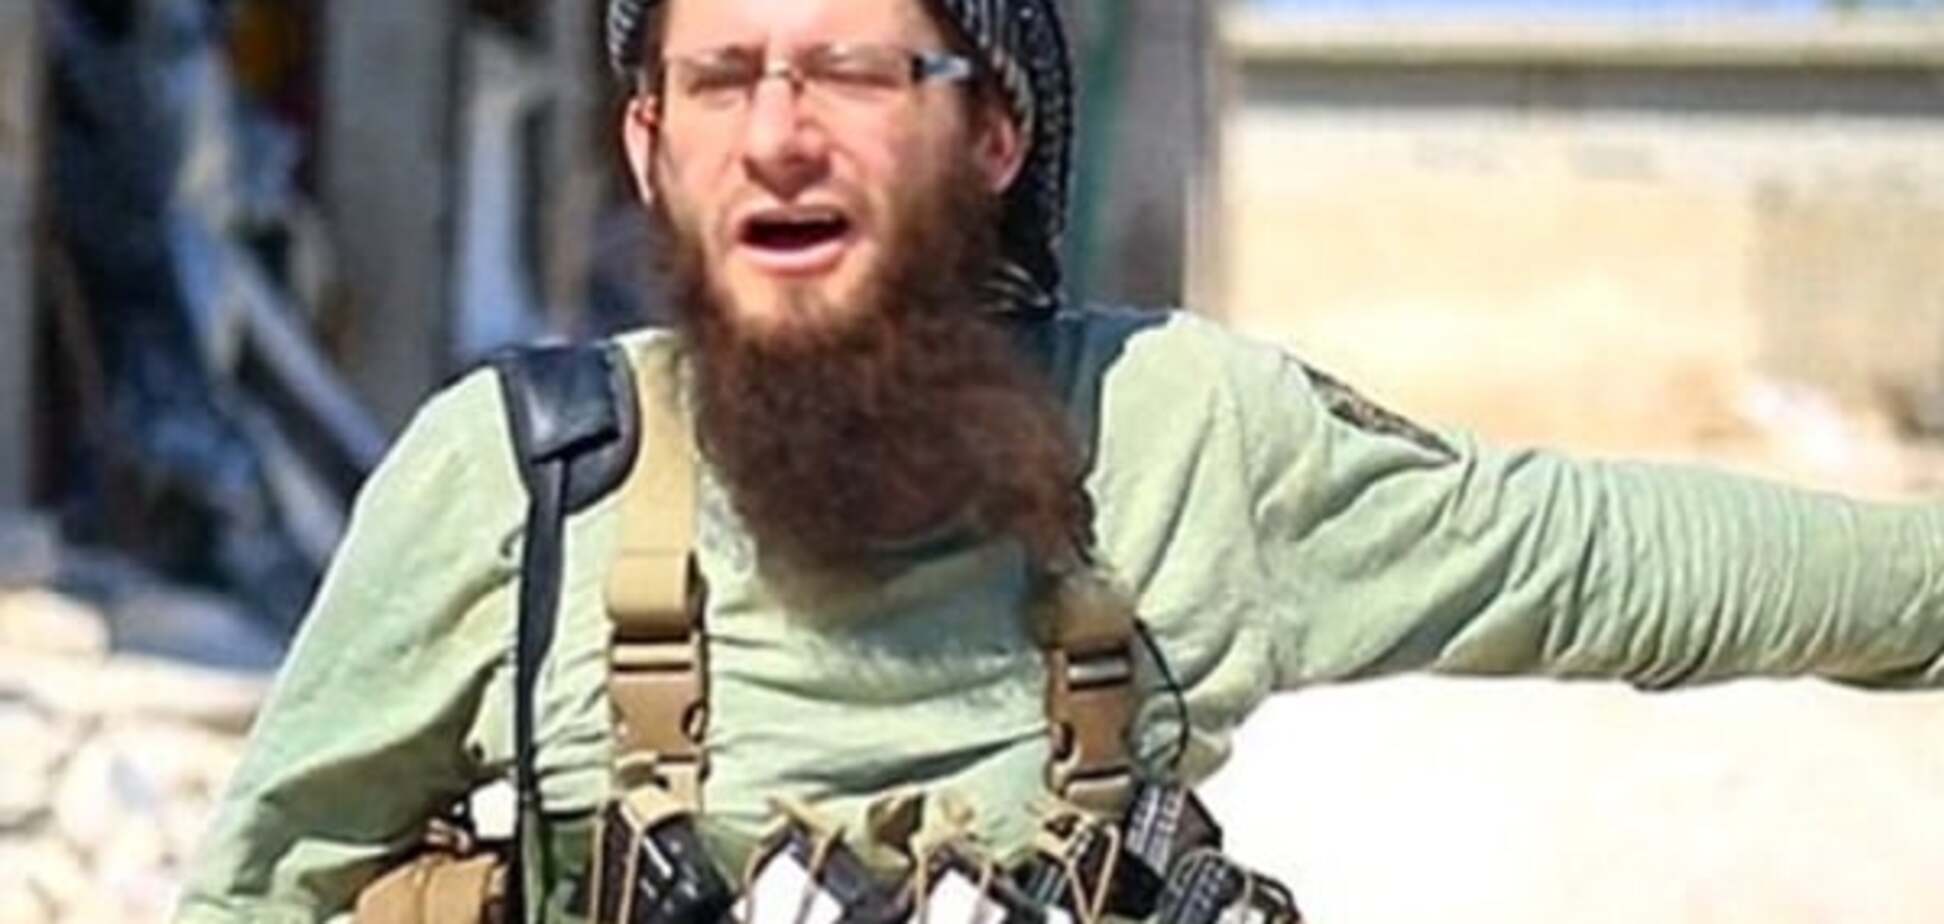 Син колеги Спілберга пішов воювати за терористів Сирії: відеофакт